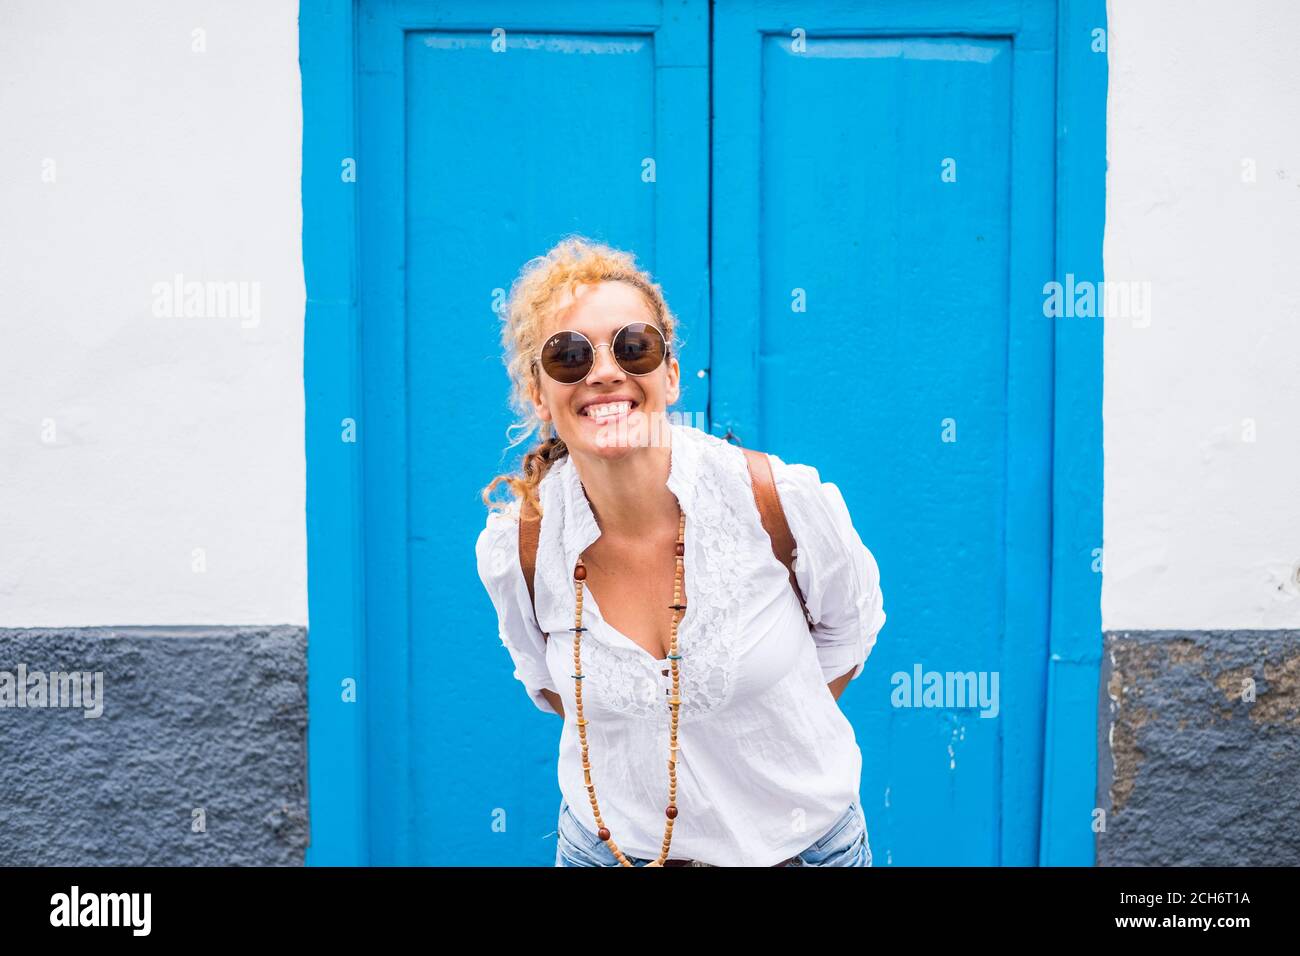 Allegro ritratto della gente con adulto sorridente bella donna divertirsi esterno con porta blu e bianca e parete a casa background - concetto di outdoor Foto Stock